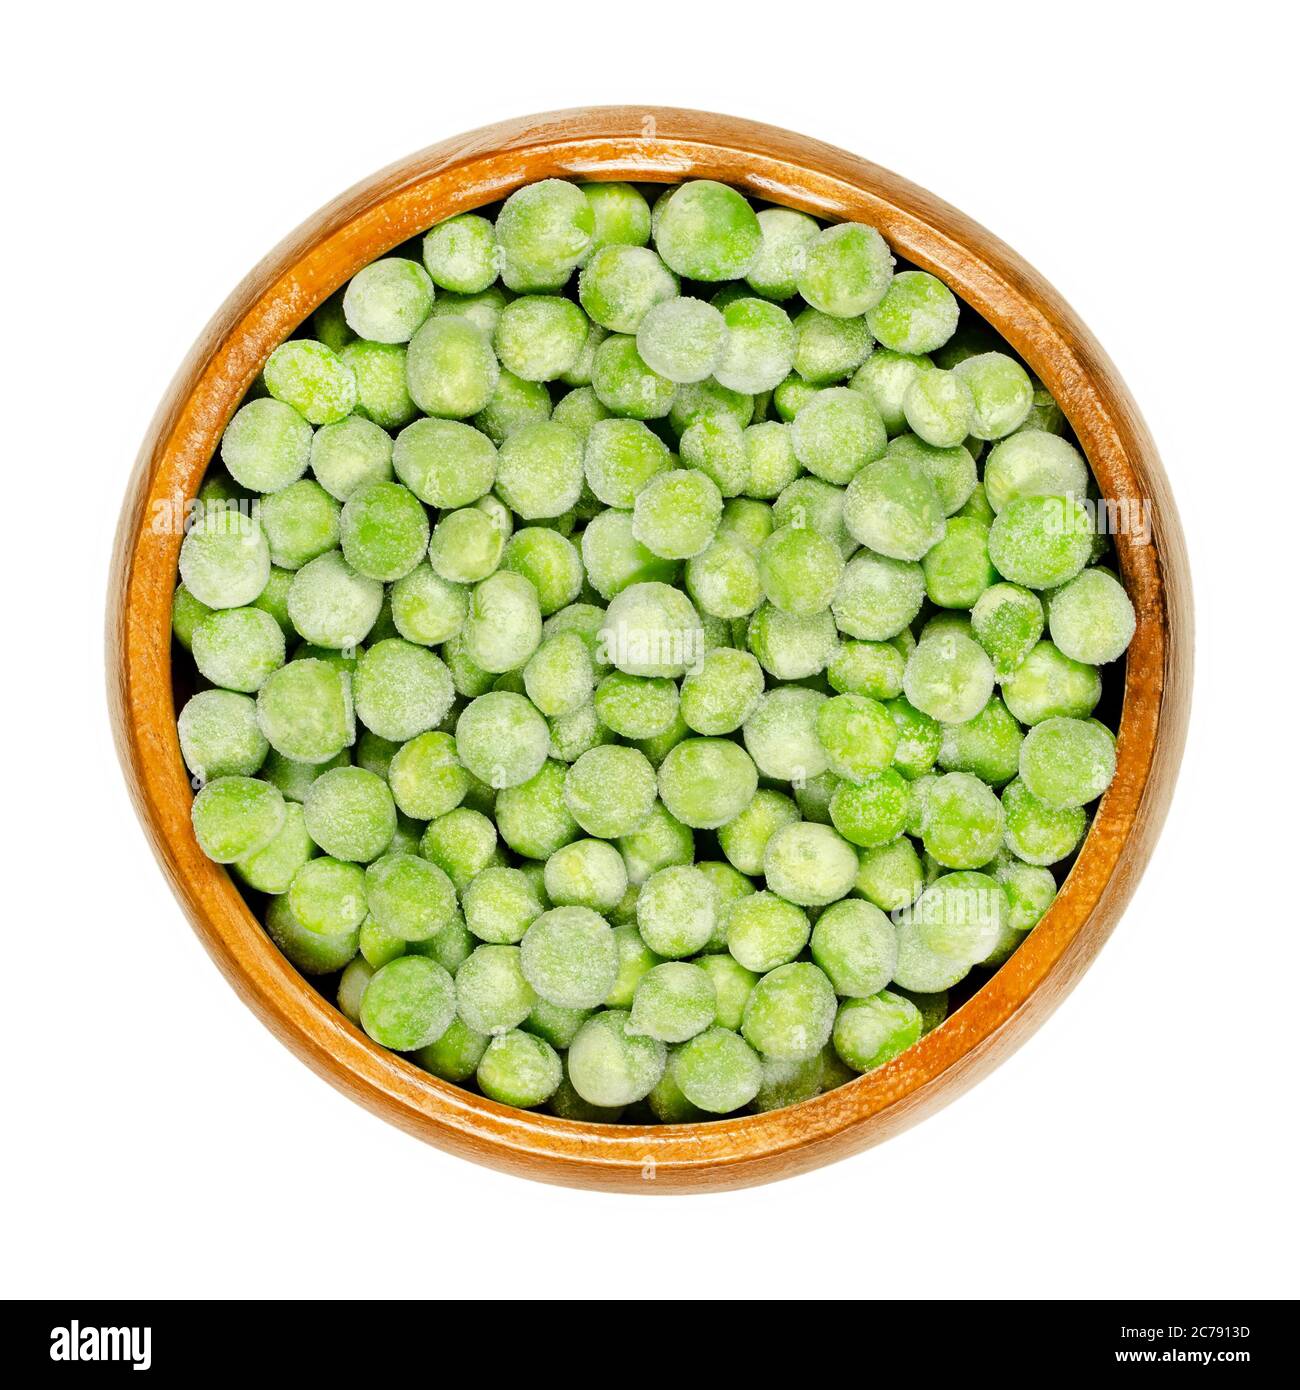 Gefrorene grüne Erbsen in Holzschüssel. Kleine kugelförmige Samen der Hülsenfrucht Pisum sativum, gefroren, um die Hülsenfrüchte frisch zu halten. Nahaufnahme, von oben. Stockfoto